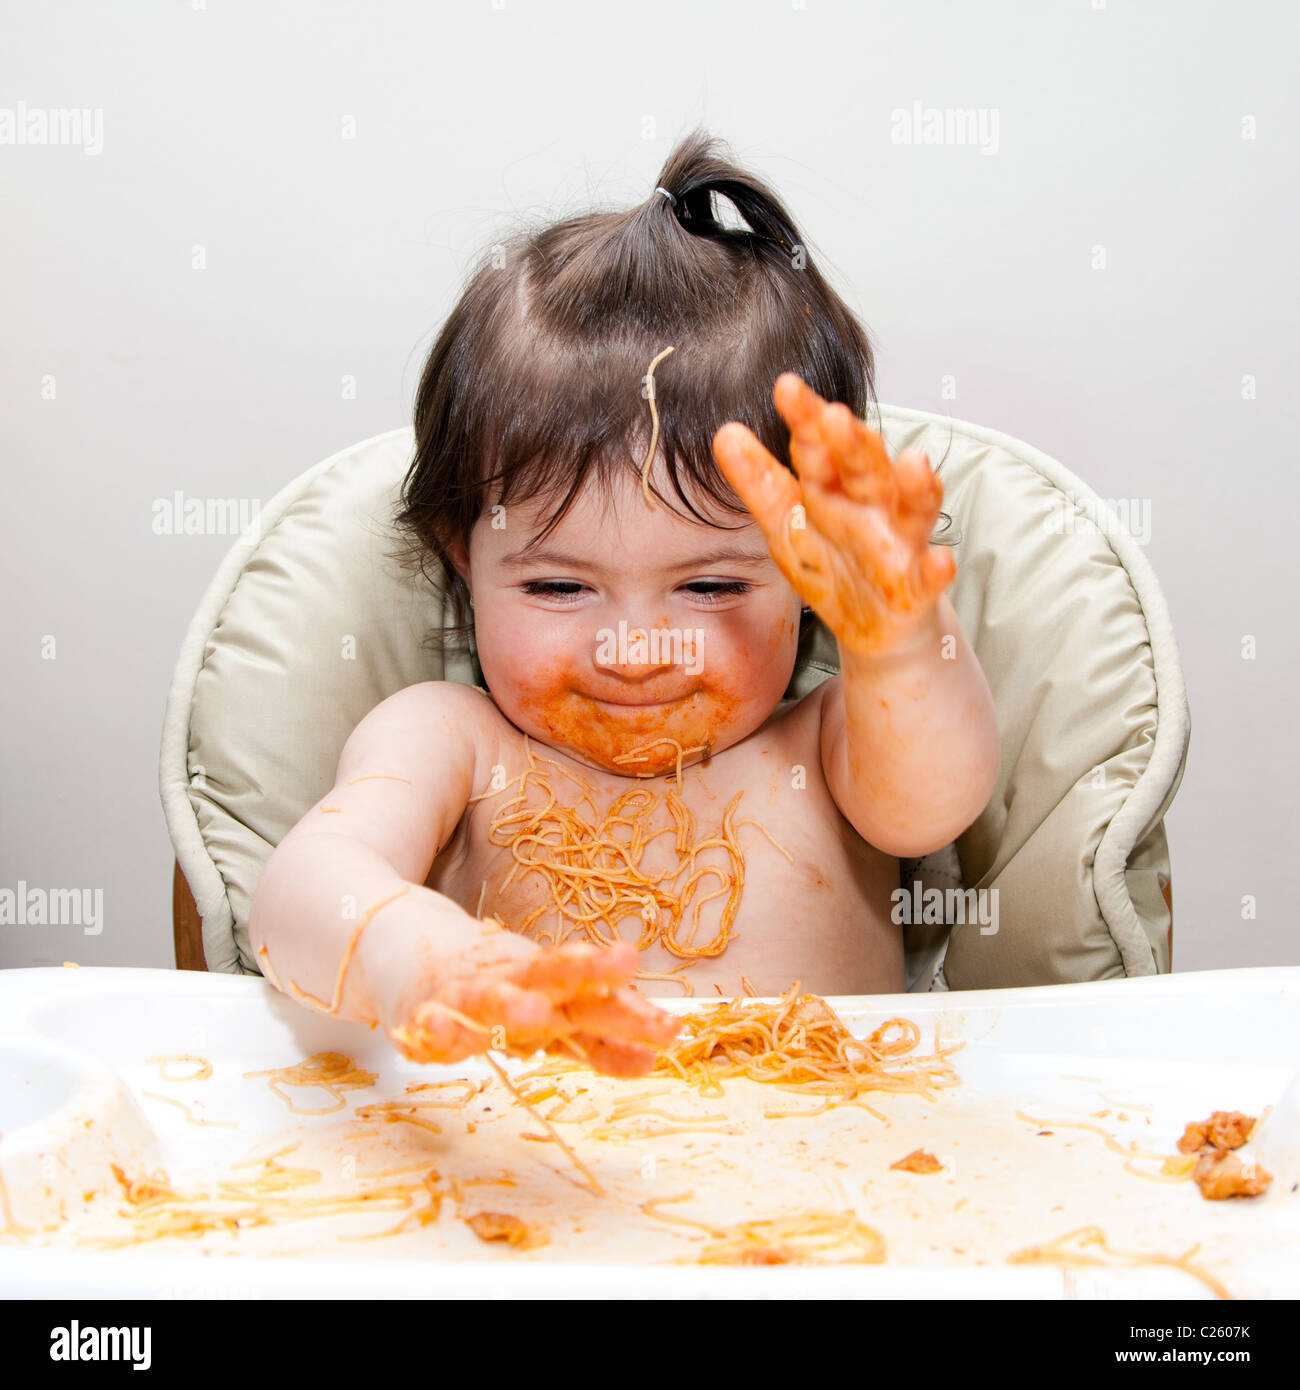 Happy baby divertirsi mangiando confuso slapping mani coperte in Spaghetti Angel Hair Pasta marinara rosso salsa di pomodoro. Foto Stock